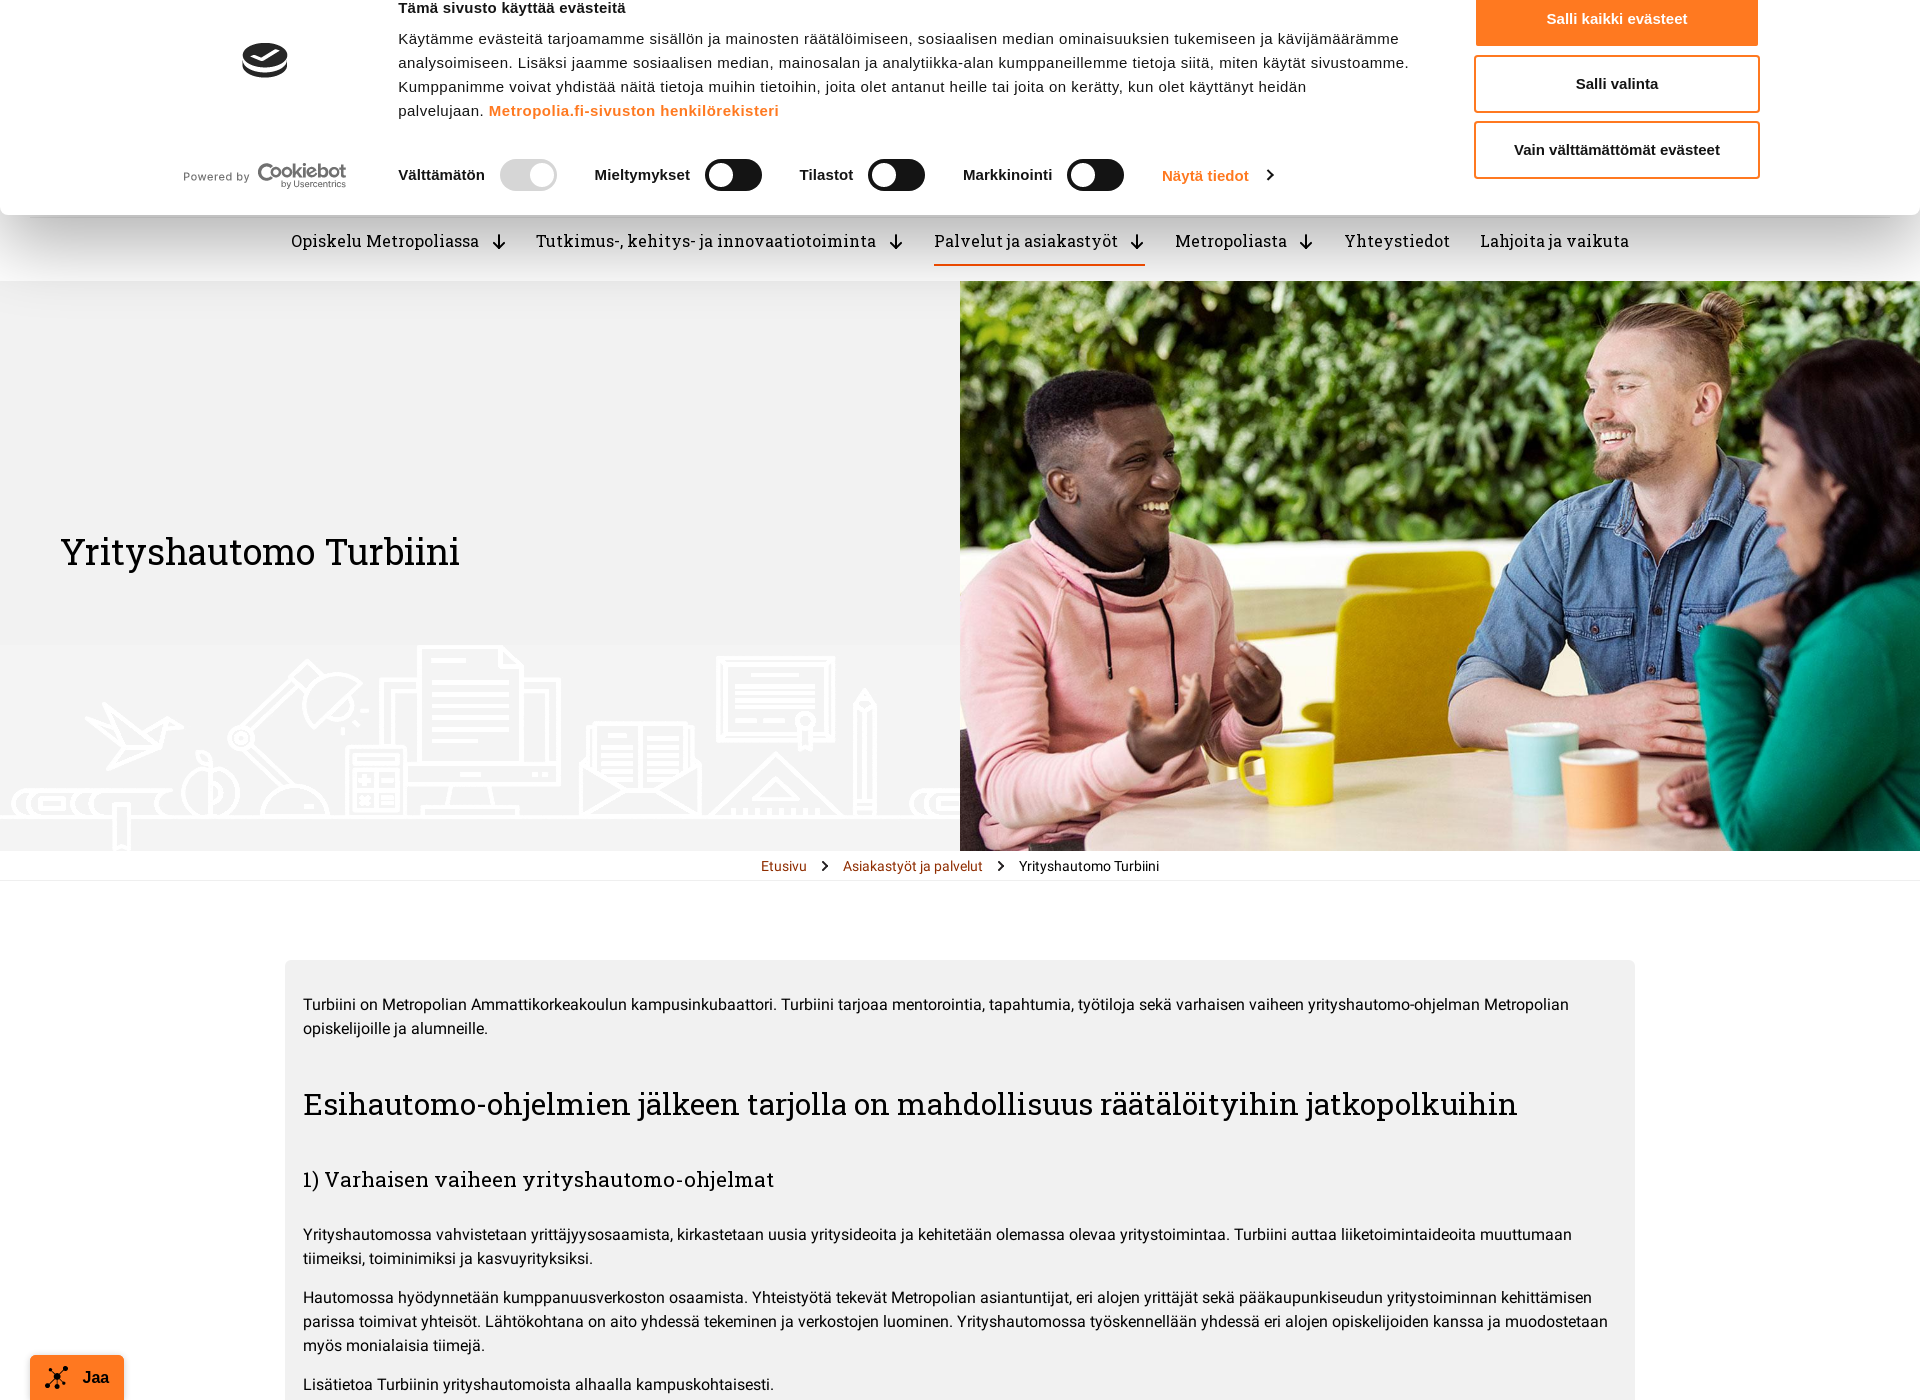 Näyttökuva kampusinkubaattori.fi